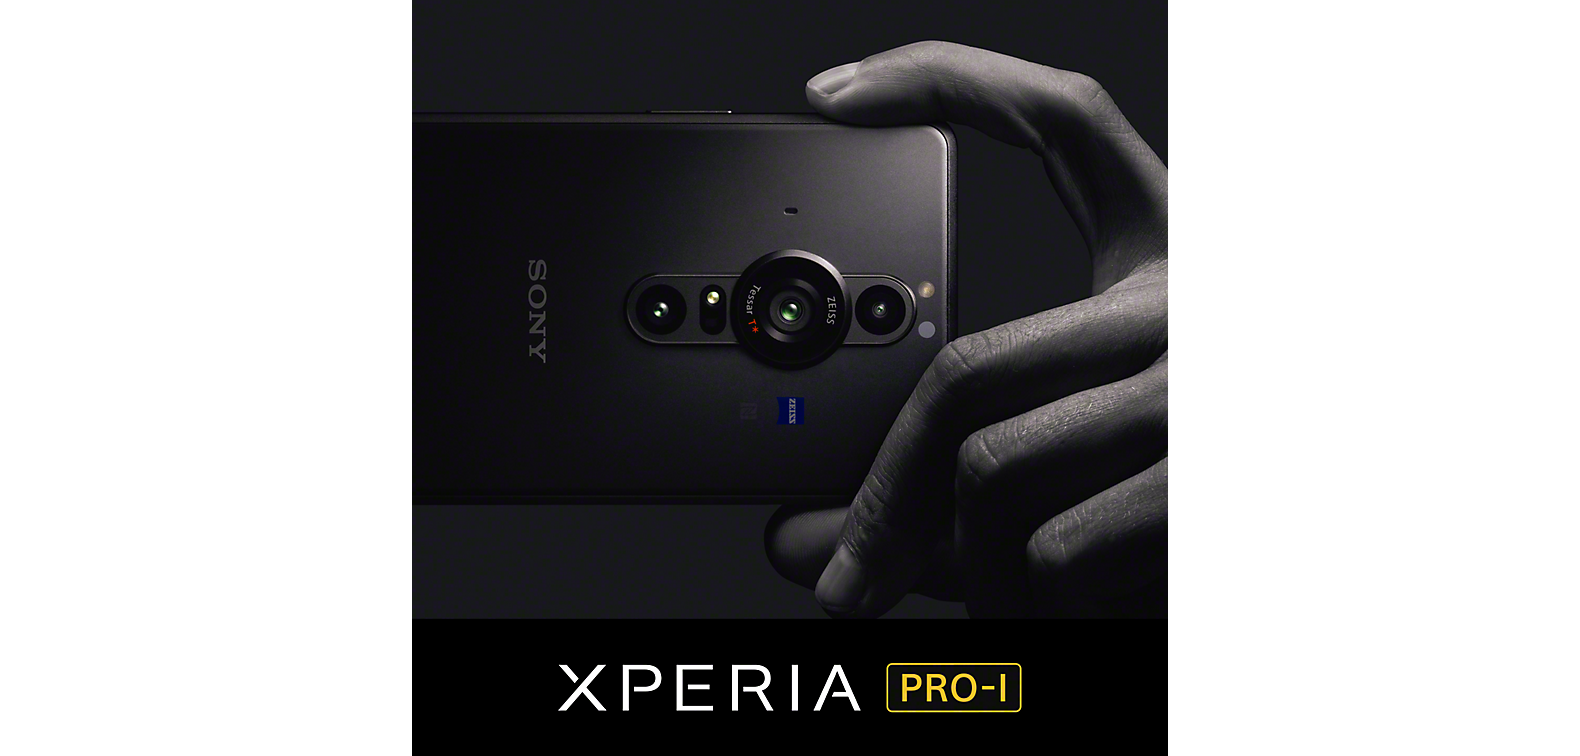 Dłoń trzymająca czarny smartfon Xperia PRO-I nad logo Xperia PRO-I.